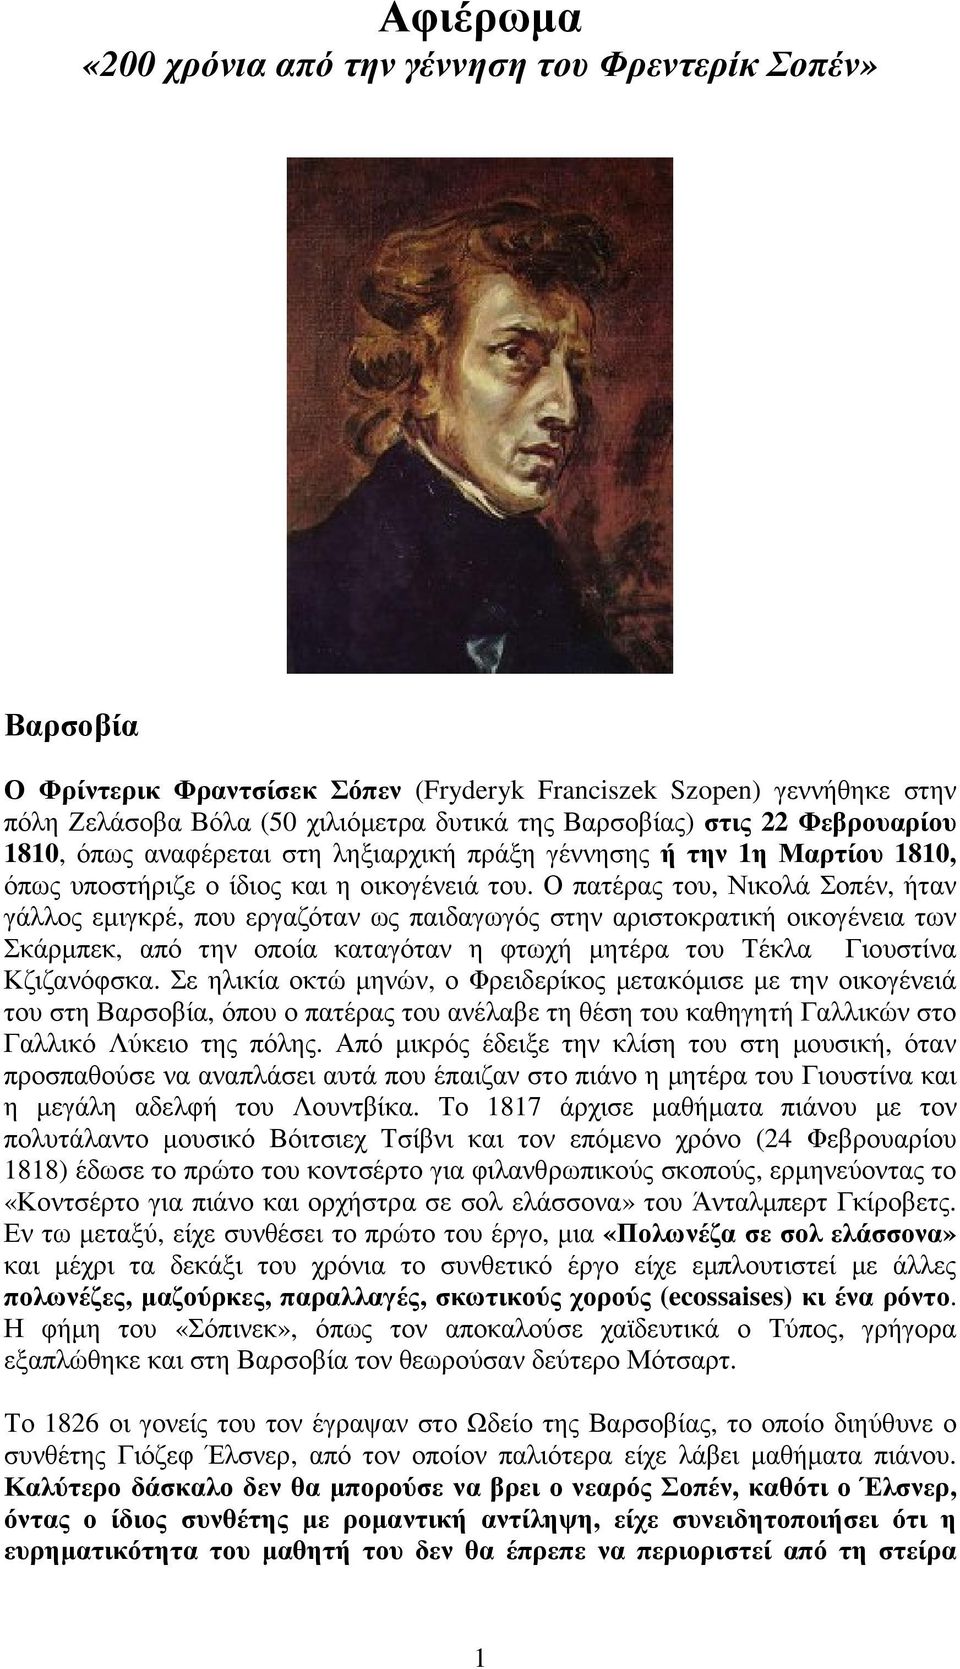 Ο πατέρας του, Νικολά Σοπέν, ήταν γάλλος εµιγκρέ, που εργαζόταν ως παιδαγωγός στην αριστοκρατική οικογένεια των Σκάρµπεκ, από την οποία καταγόταν η φτωχή µητέρα του Τέκλα Γιουστίνα Κζιζανόφσκα.